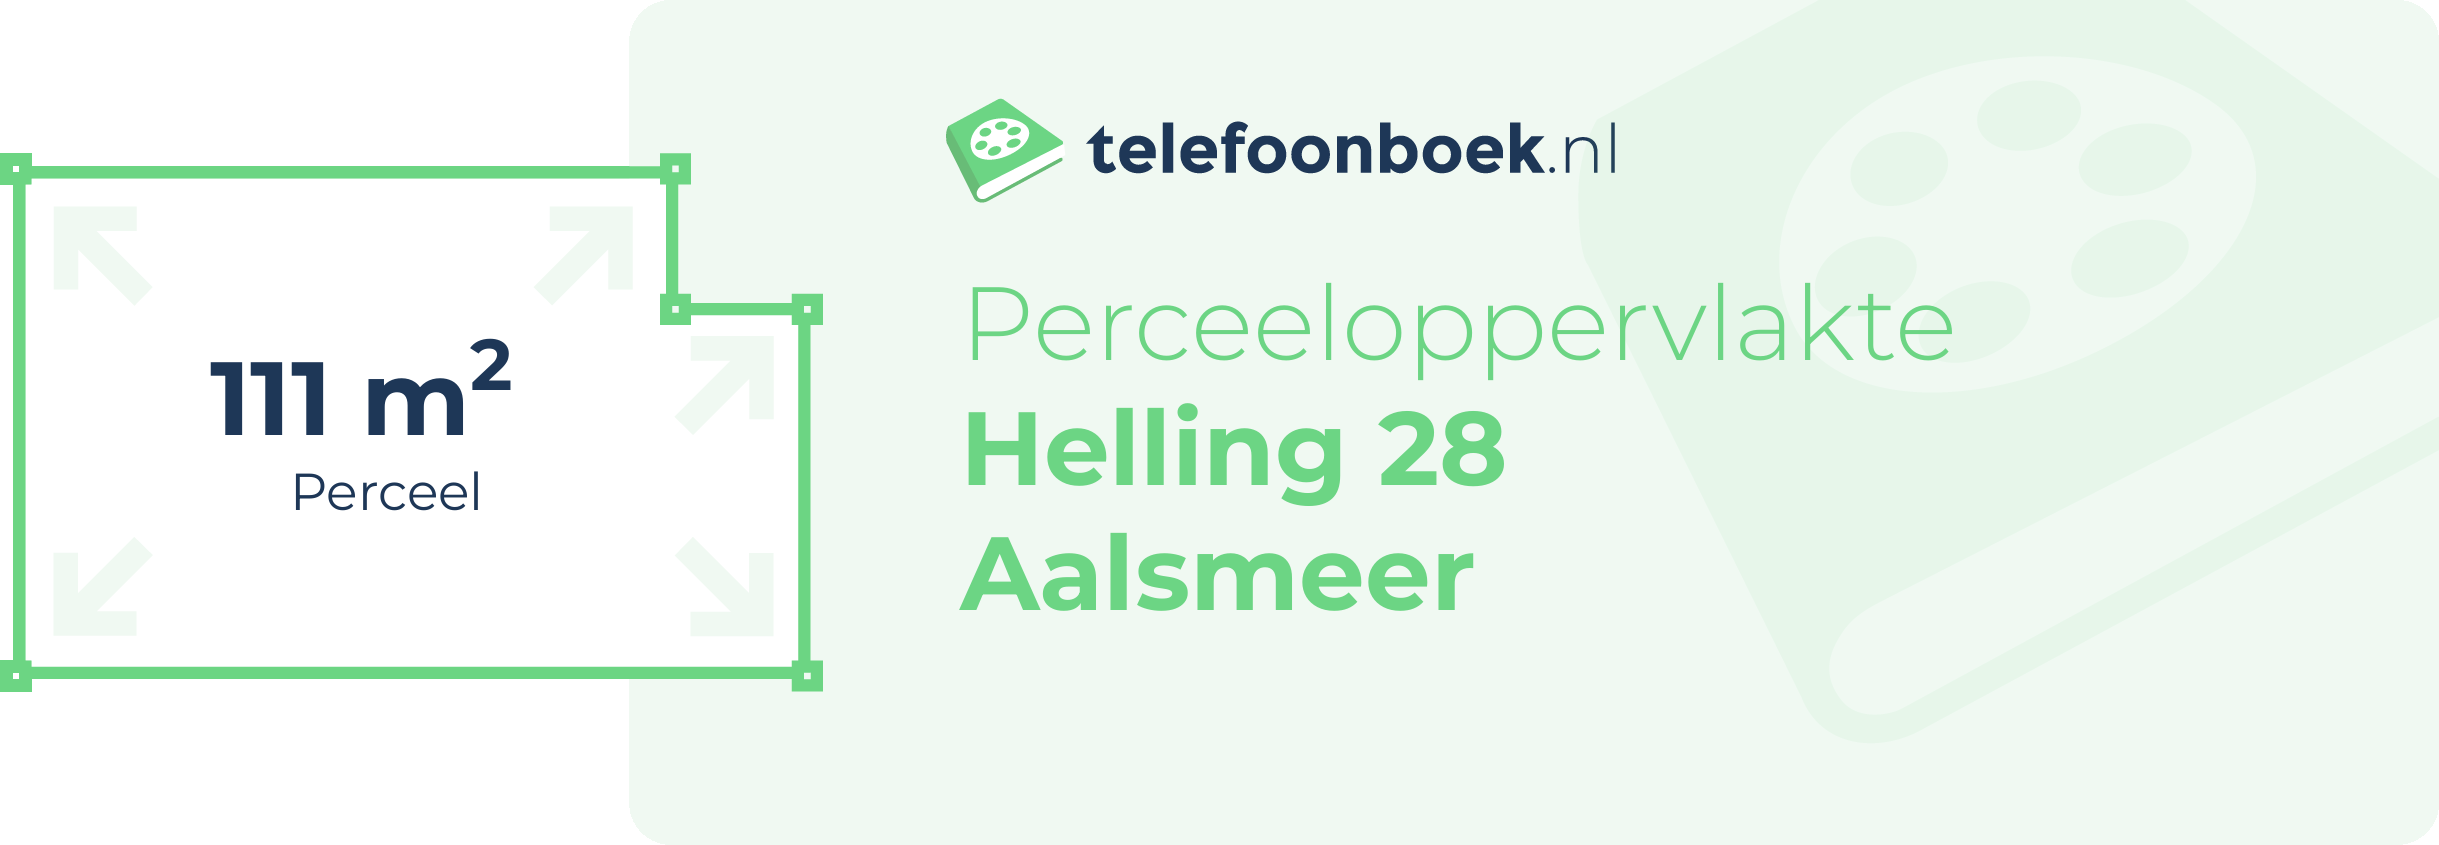 Perceeloppervlakte Helling 28 Aalsmeer